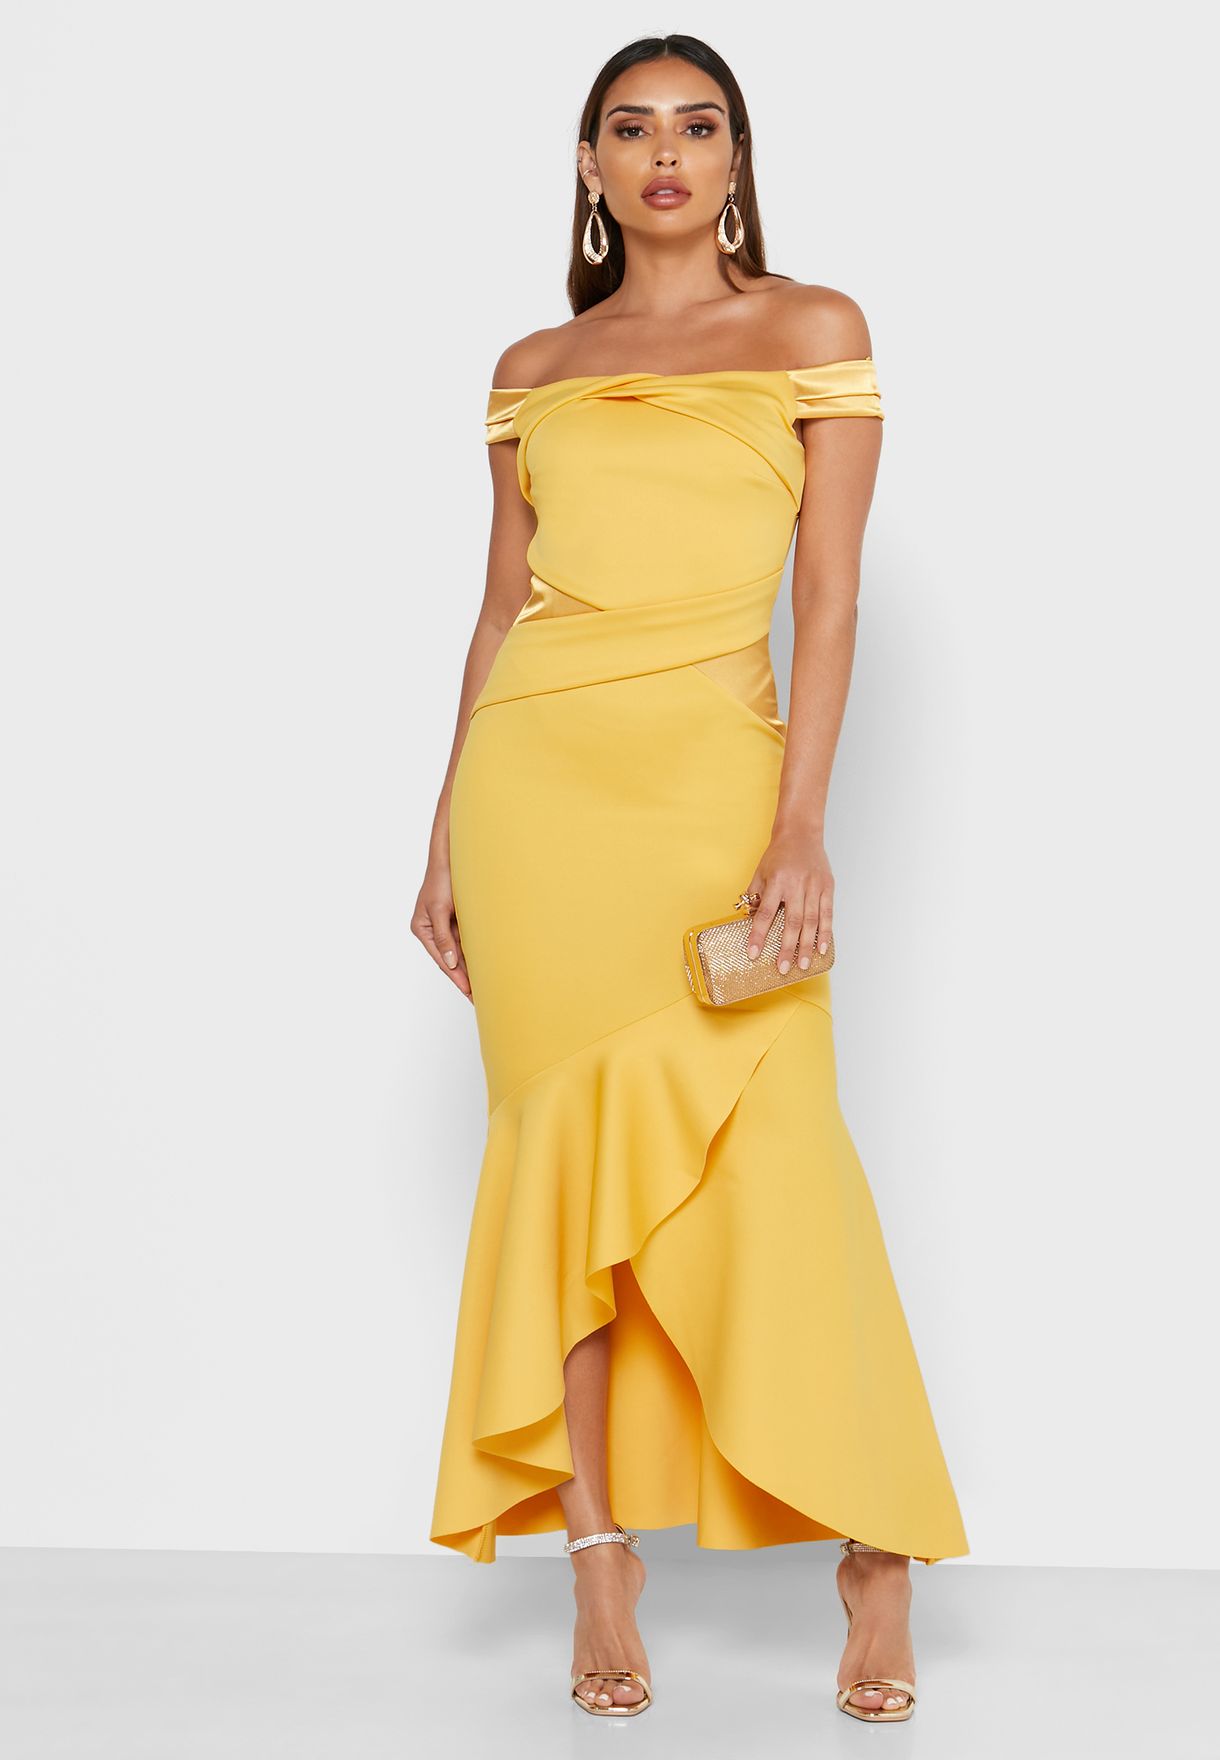 lipsy yellow bardot dress